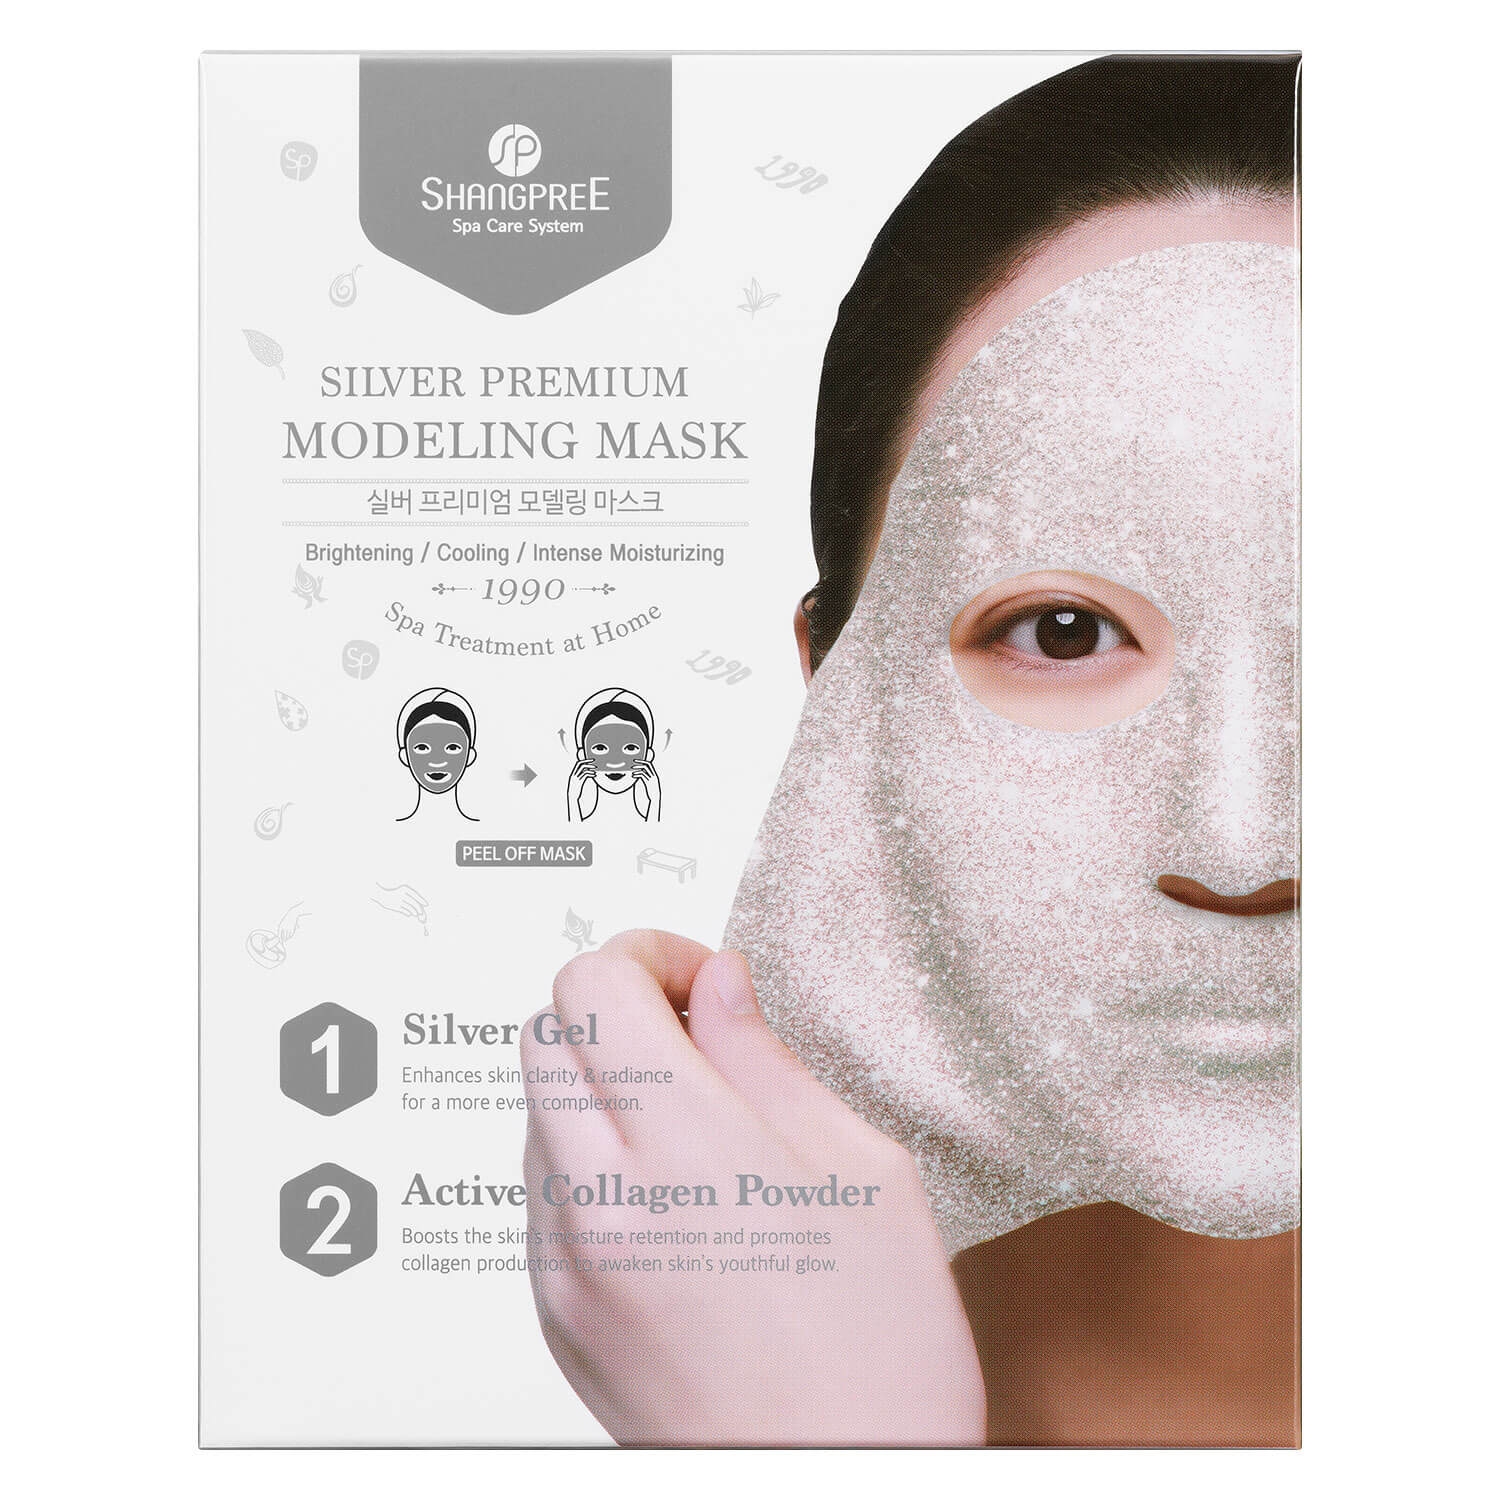 Produktbild von SHANGPREE - Silver Premium Modeling Mask